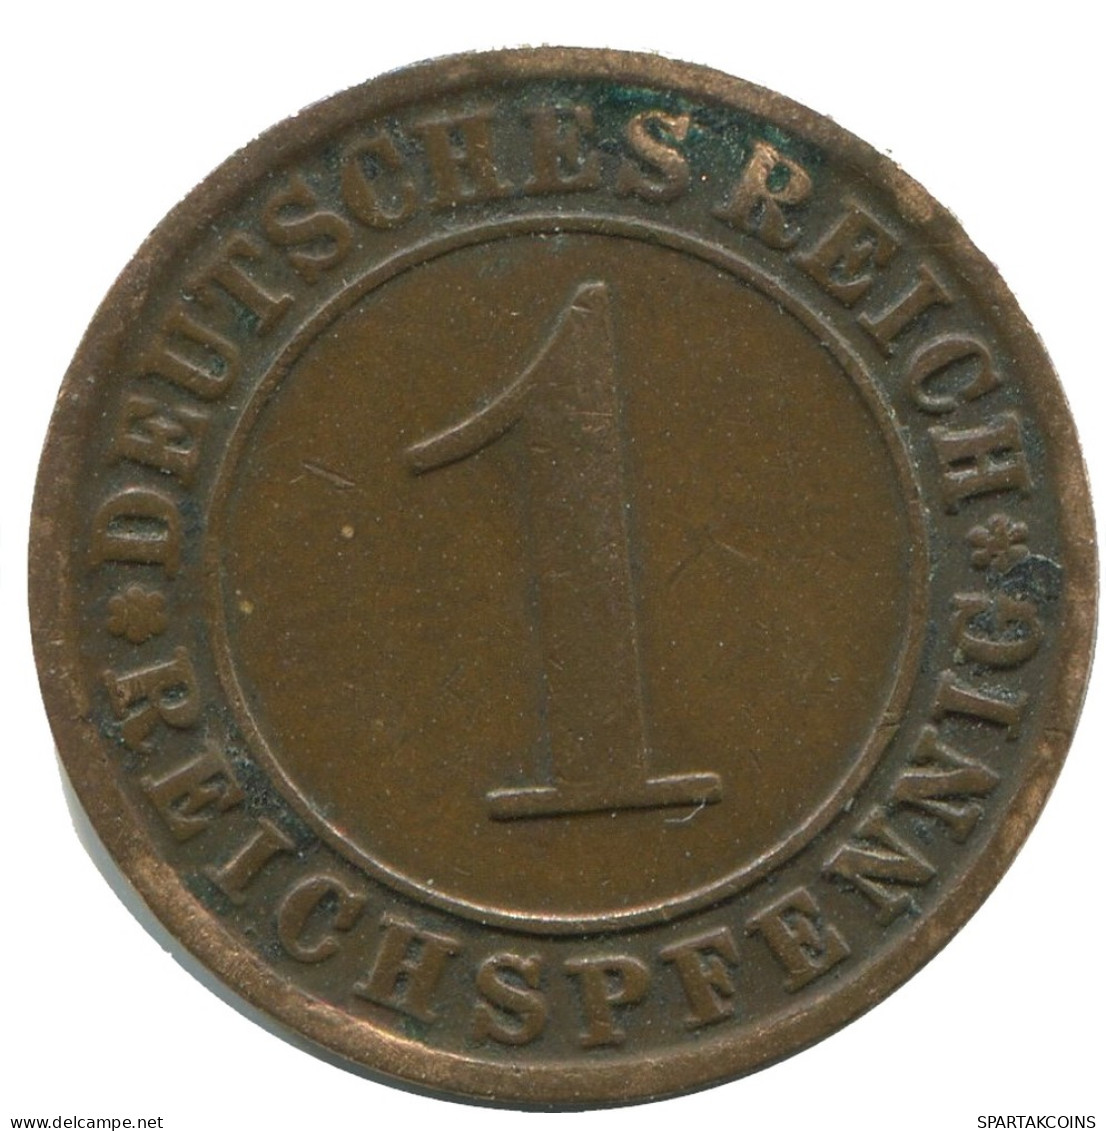 1 REICHSPFENNIG 1924 J GERMANY Coin #AD460.9.U - 1 Rentenpfennig & 1 Reichspfennig